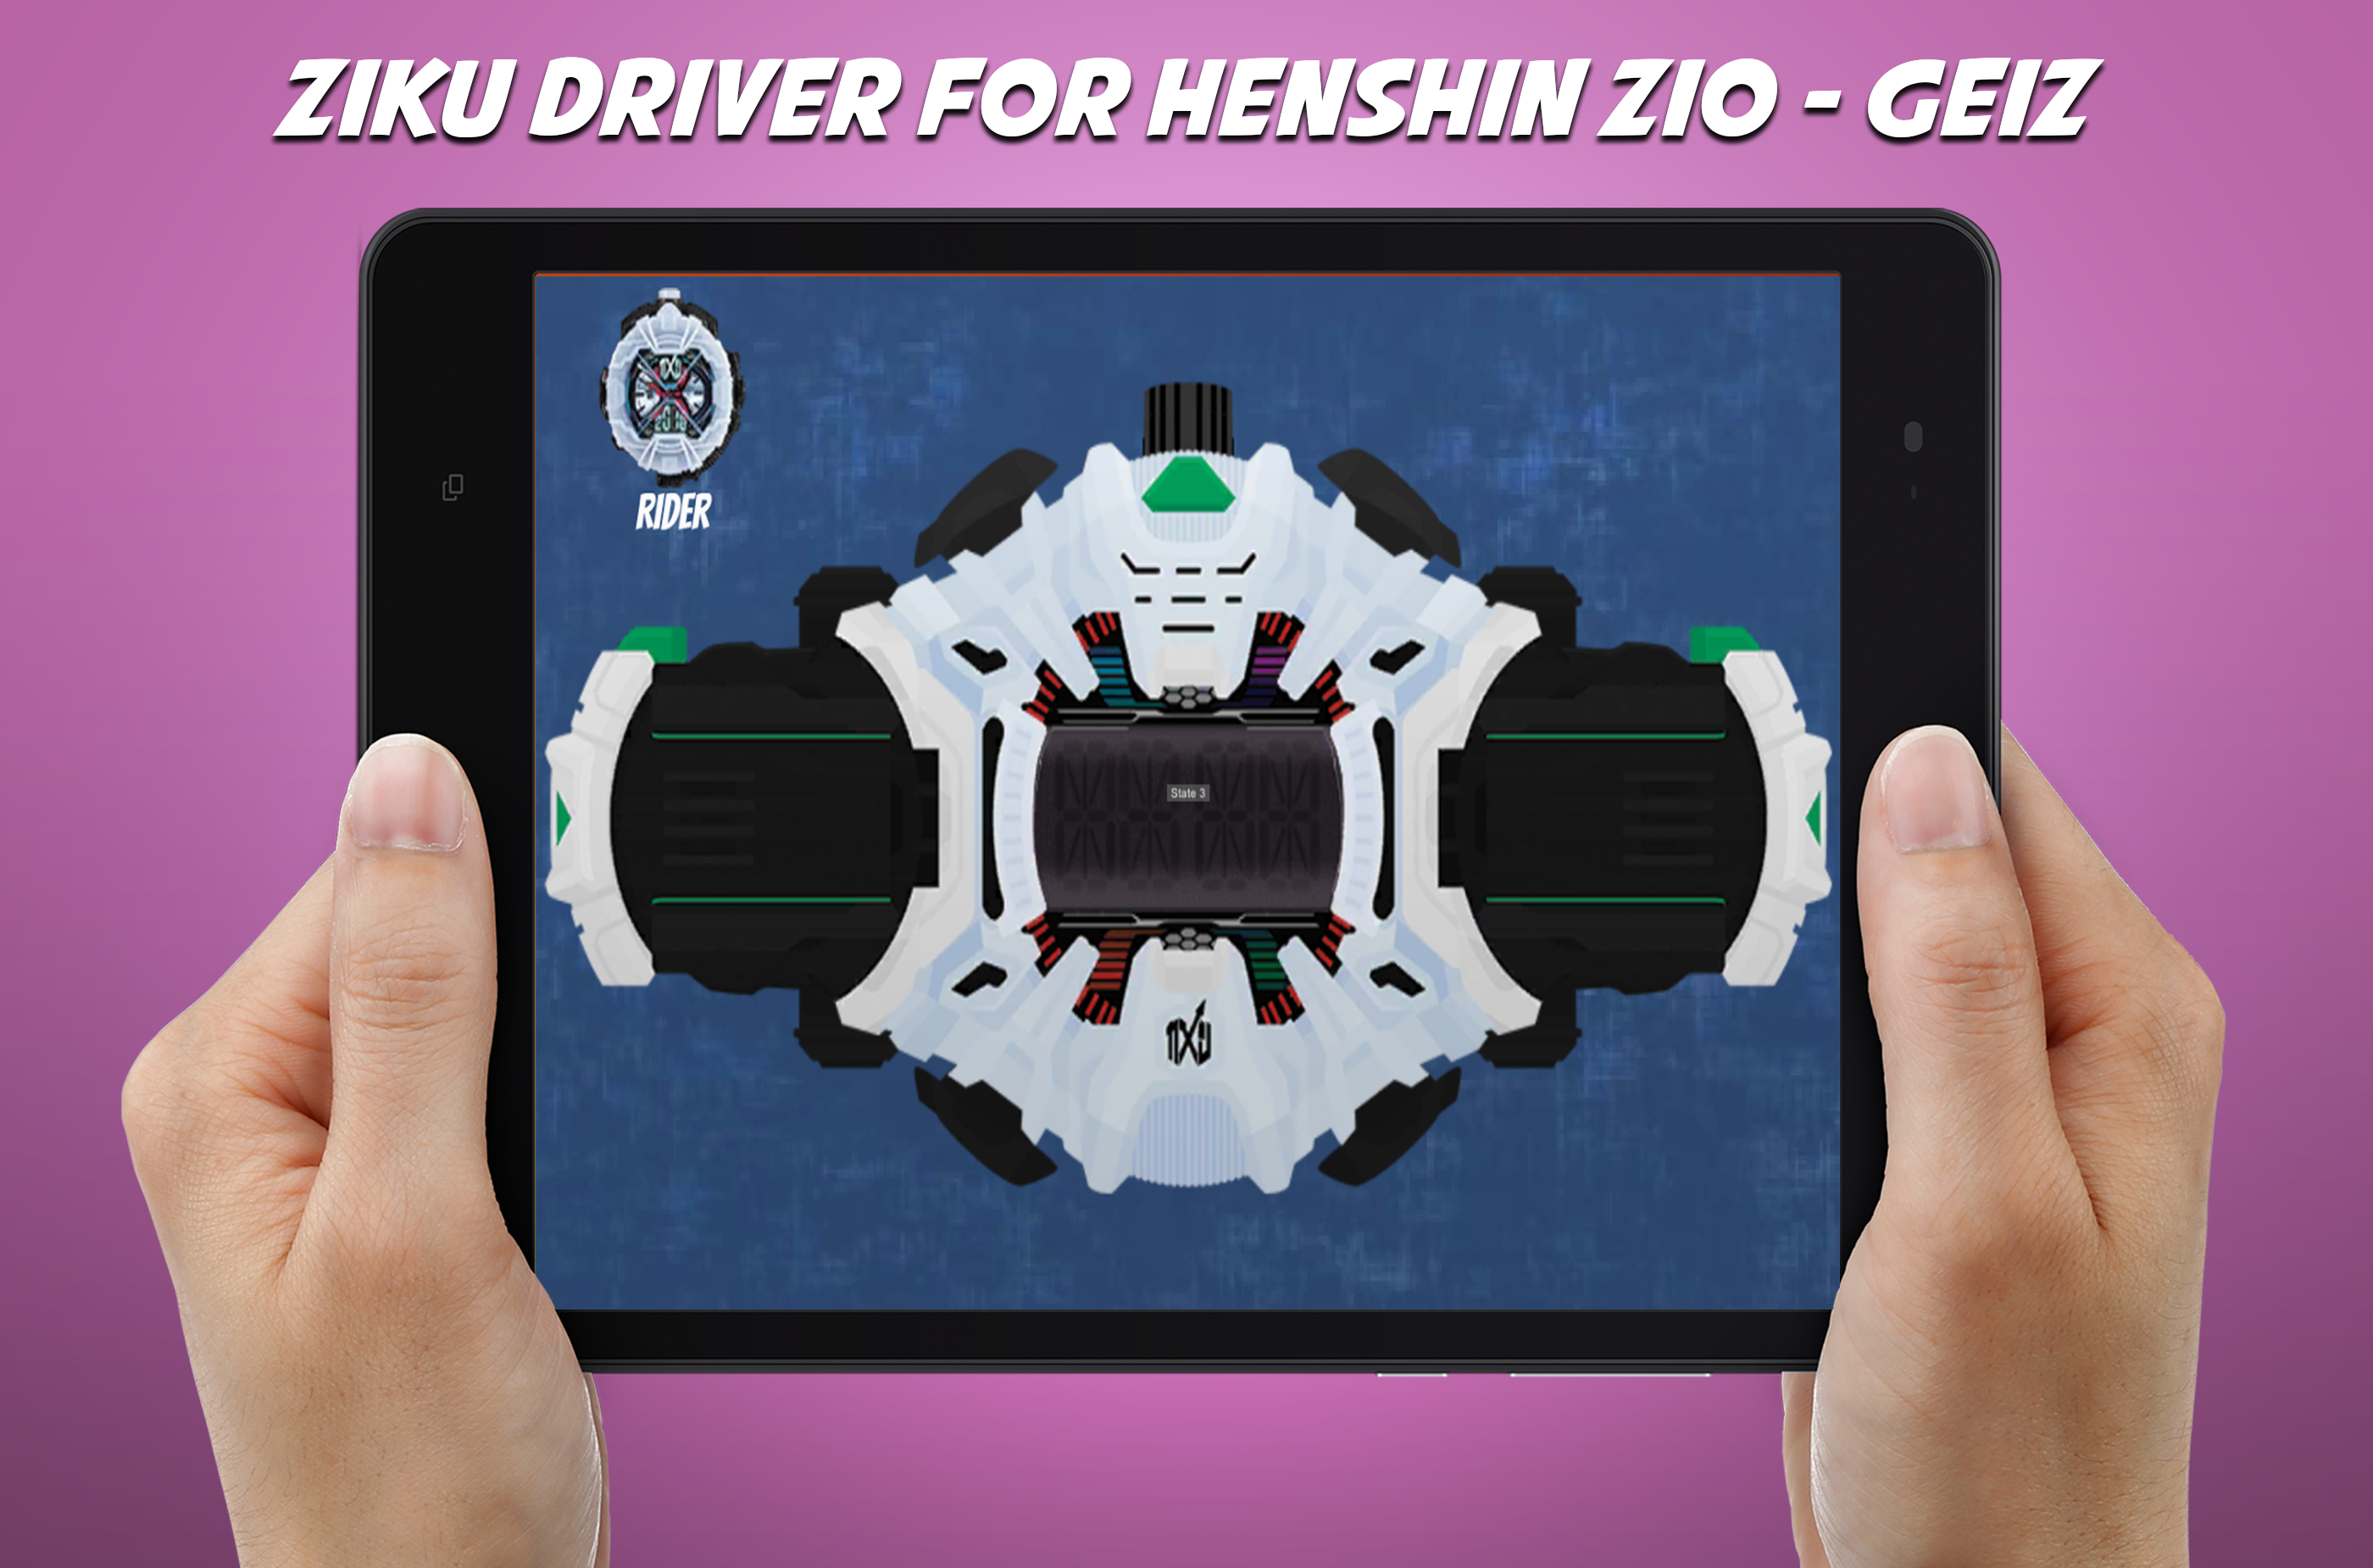 Screenshot 1 of हेनशिन बेल्ट ज़ीओ के लिए डीएक्स ज़िकू ड्राइवर - गीज़ 2.0